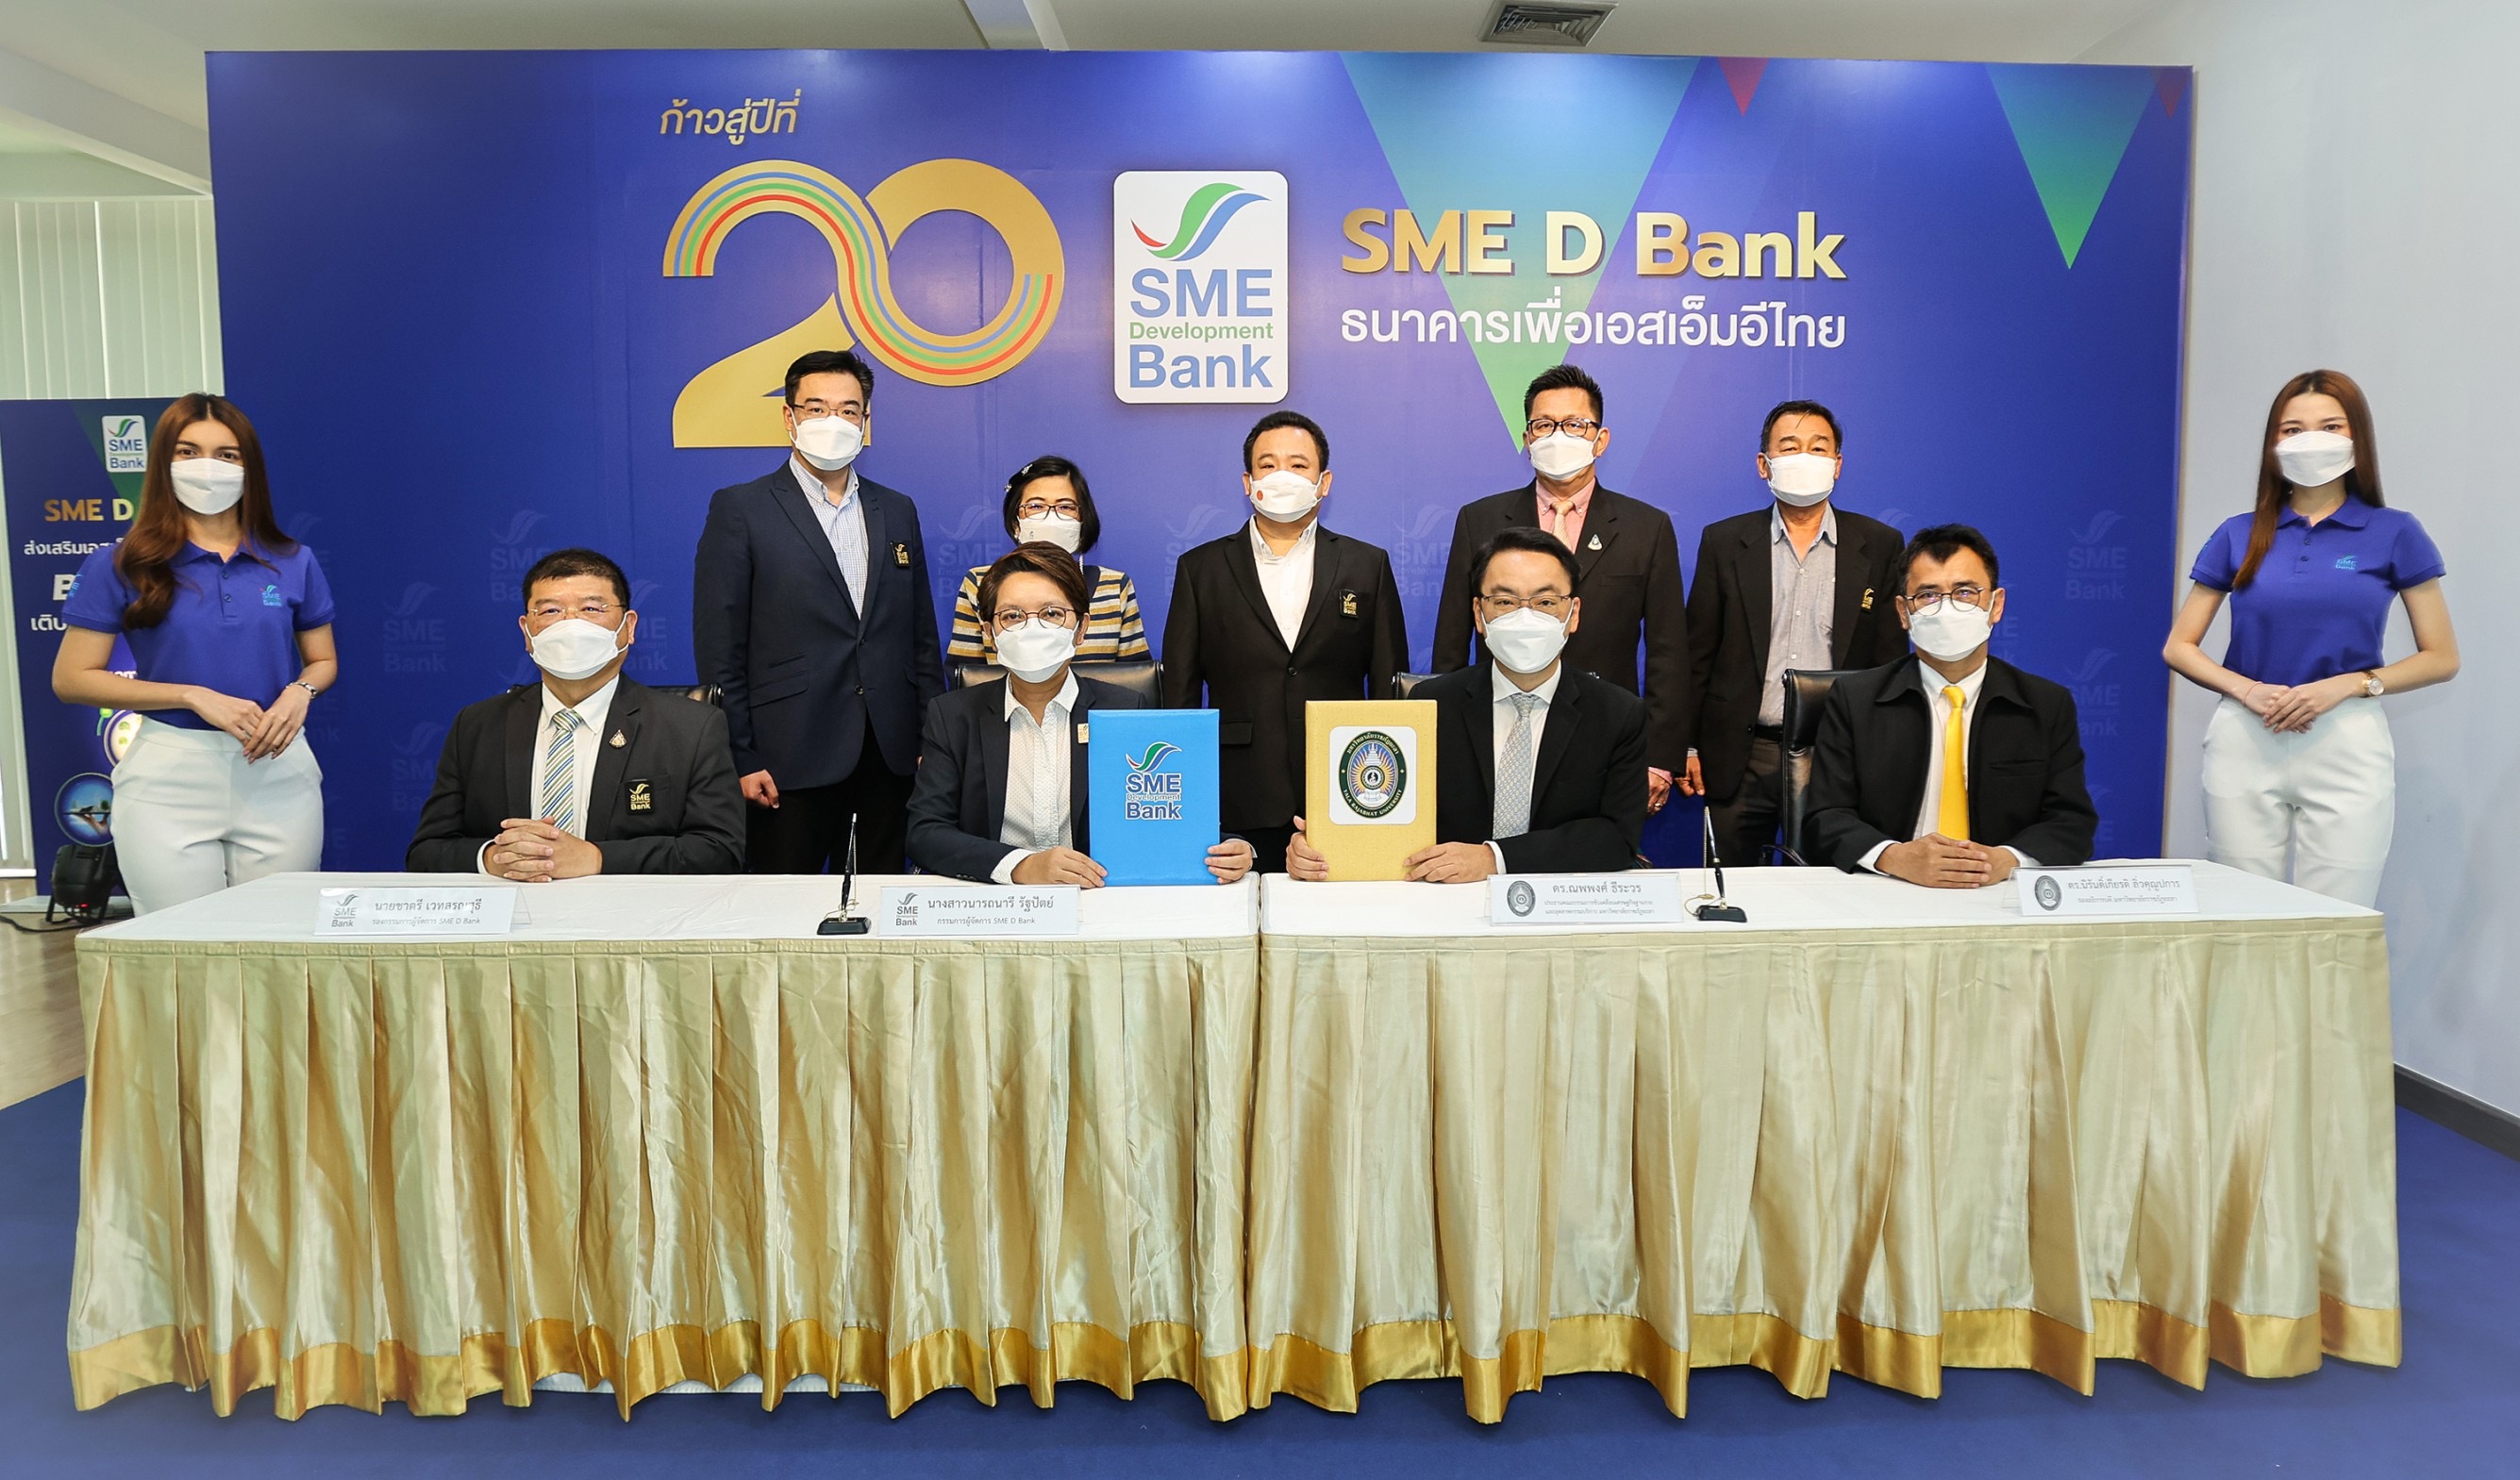 SME D Bank จับมือคณะกรรมการขับเคลื่อนเศรษฐกิจฐานราก ม.ราชภัฏยะลา เตรียมสินเชื่อ 2,000 ลบ. ปลุกเศรษฐกิจชายแดนใต้ หนุนโครงการ “เบตงหมื่นล้าน”